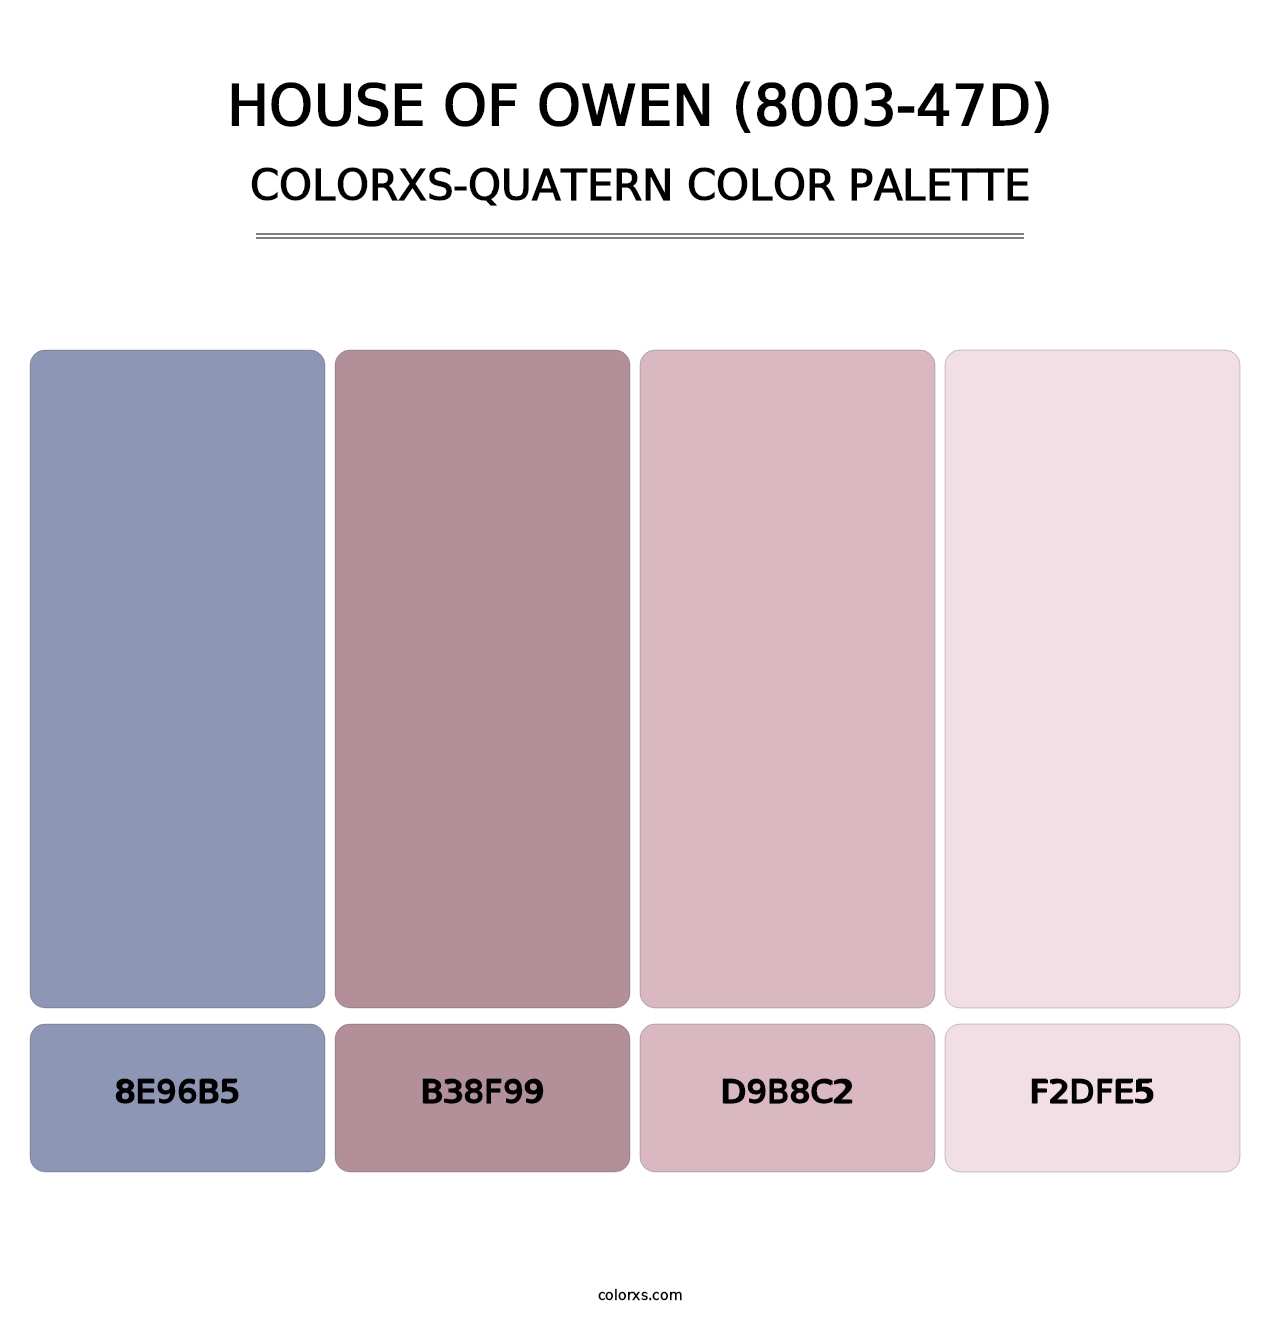 House of Owen (8003-47D) - Colorxs Quatern Palette